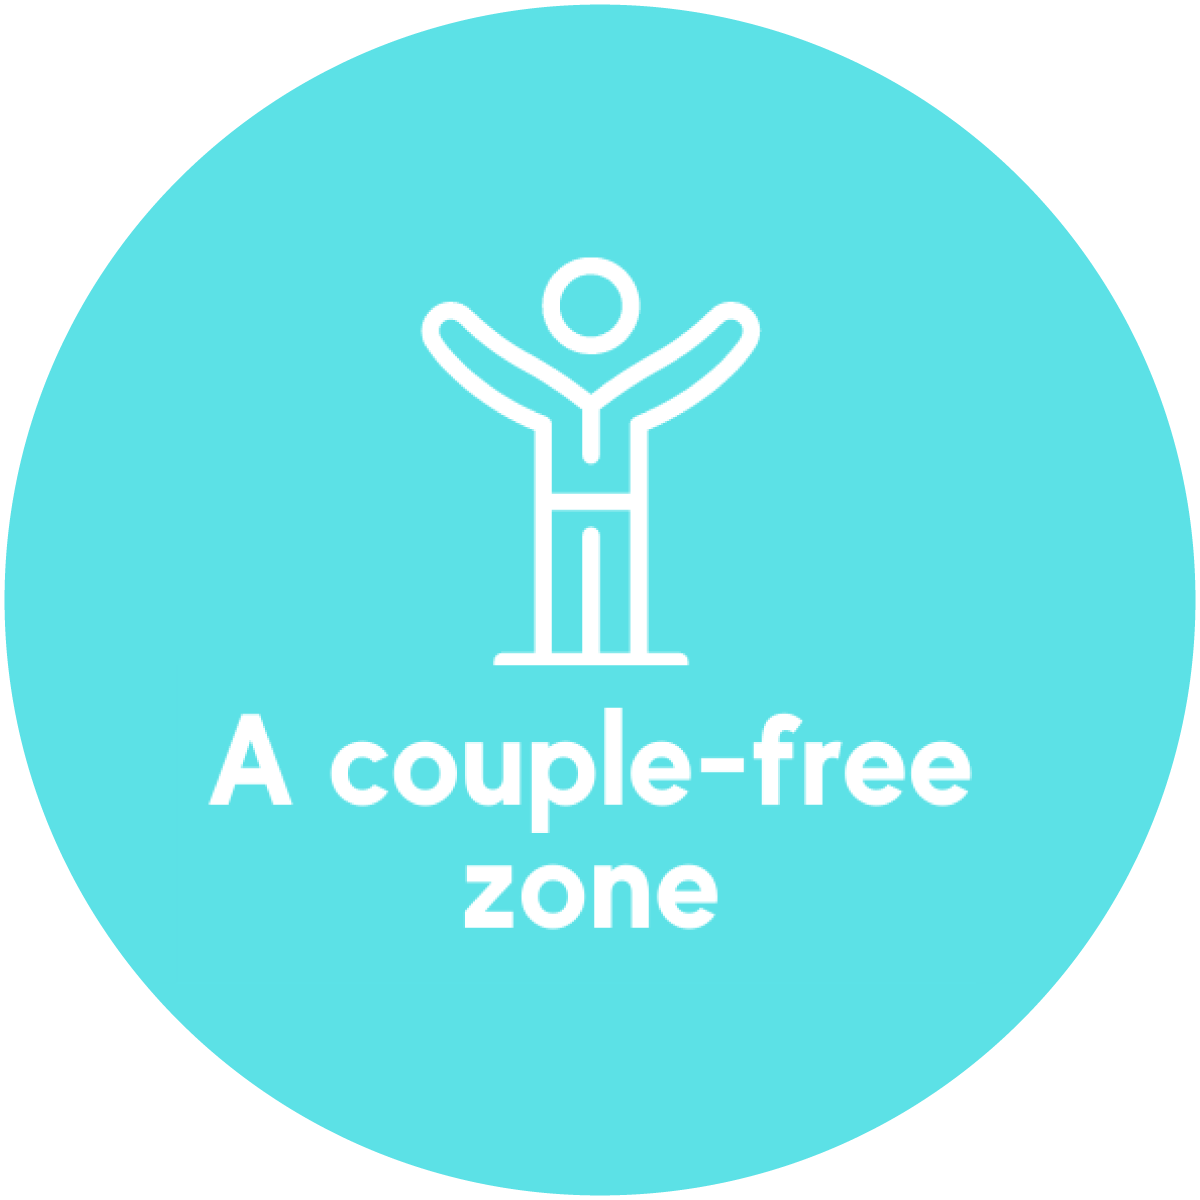 A couple-free zone